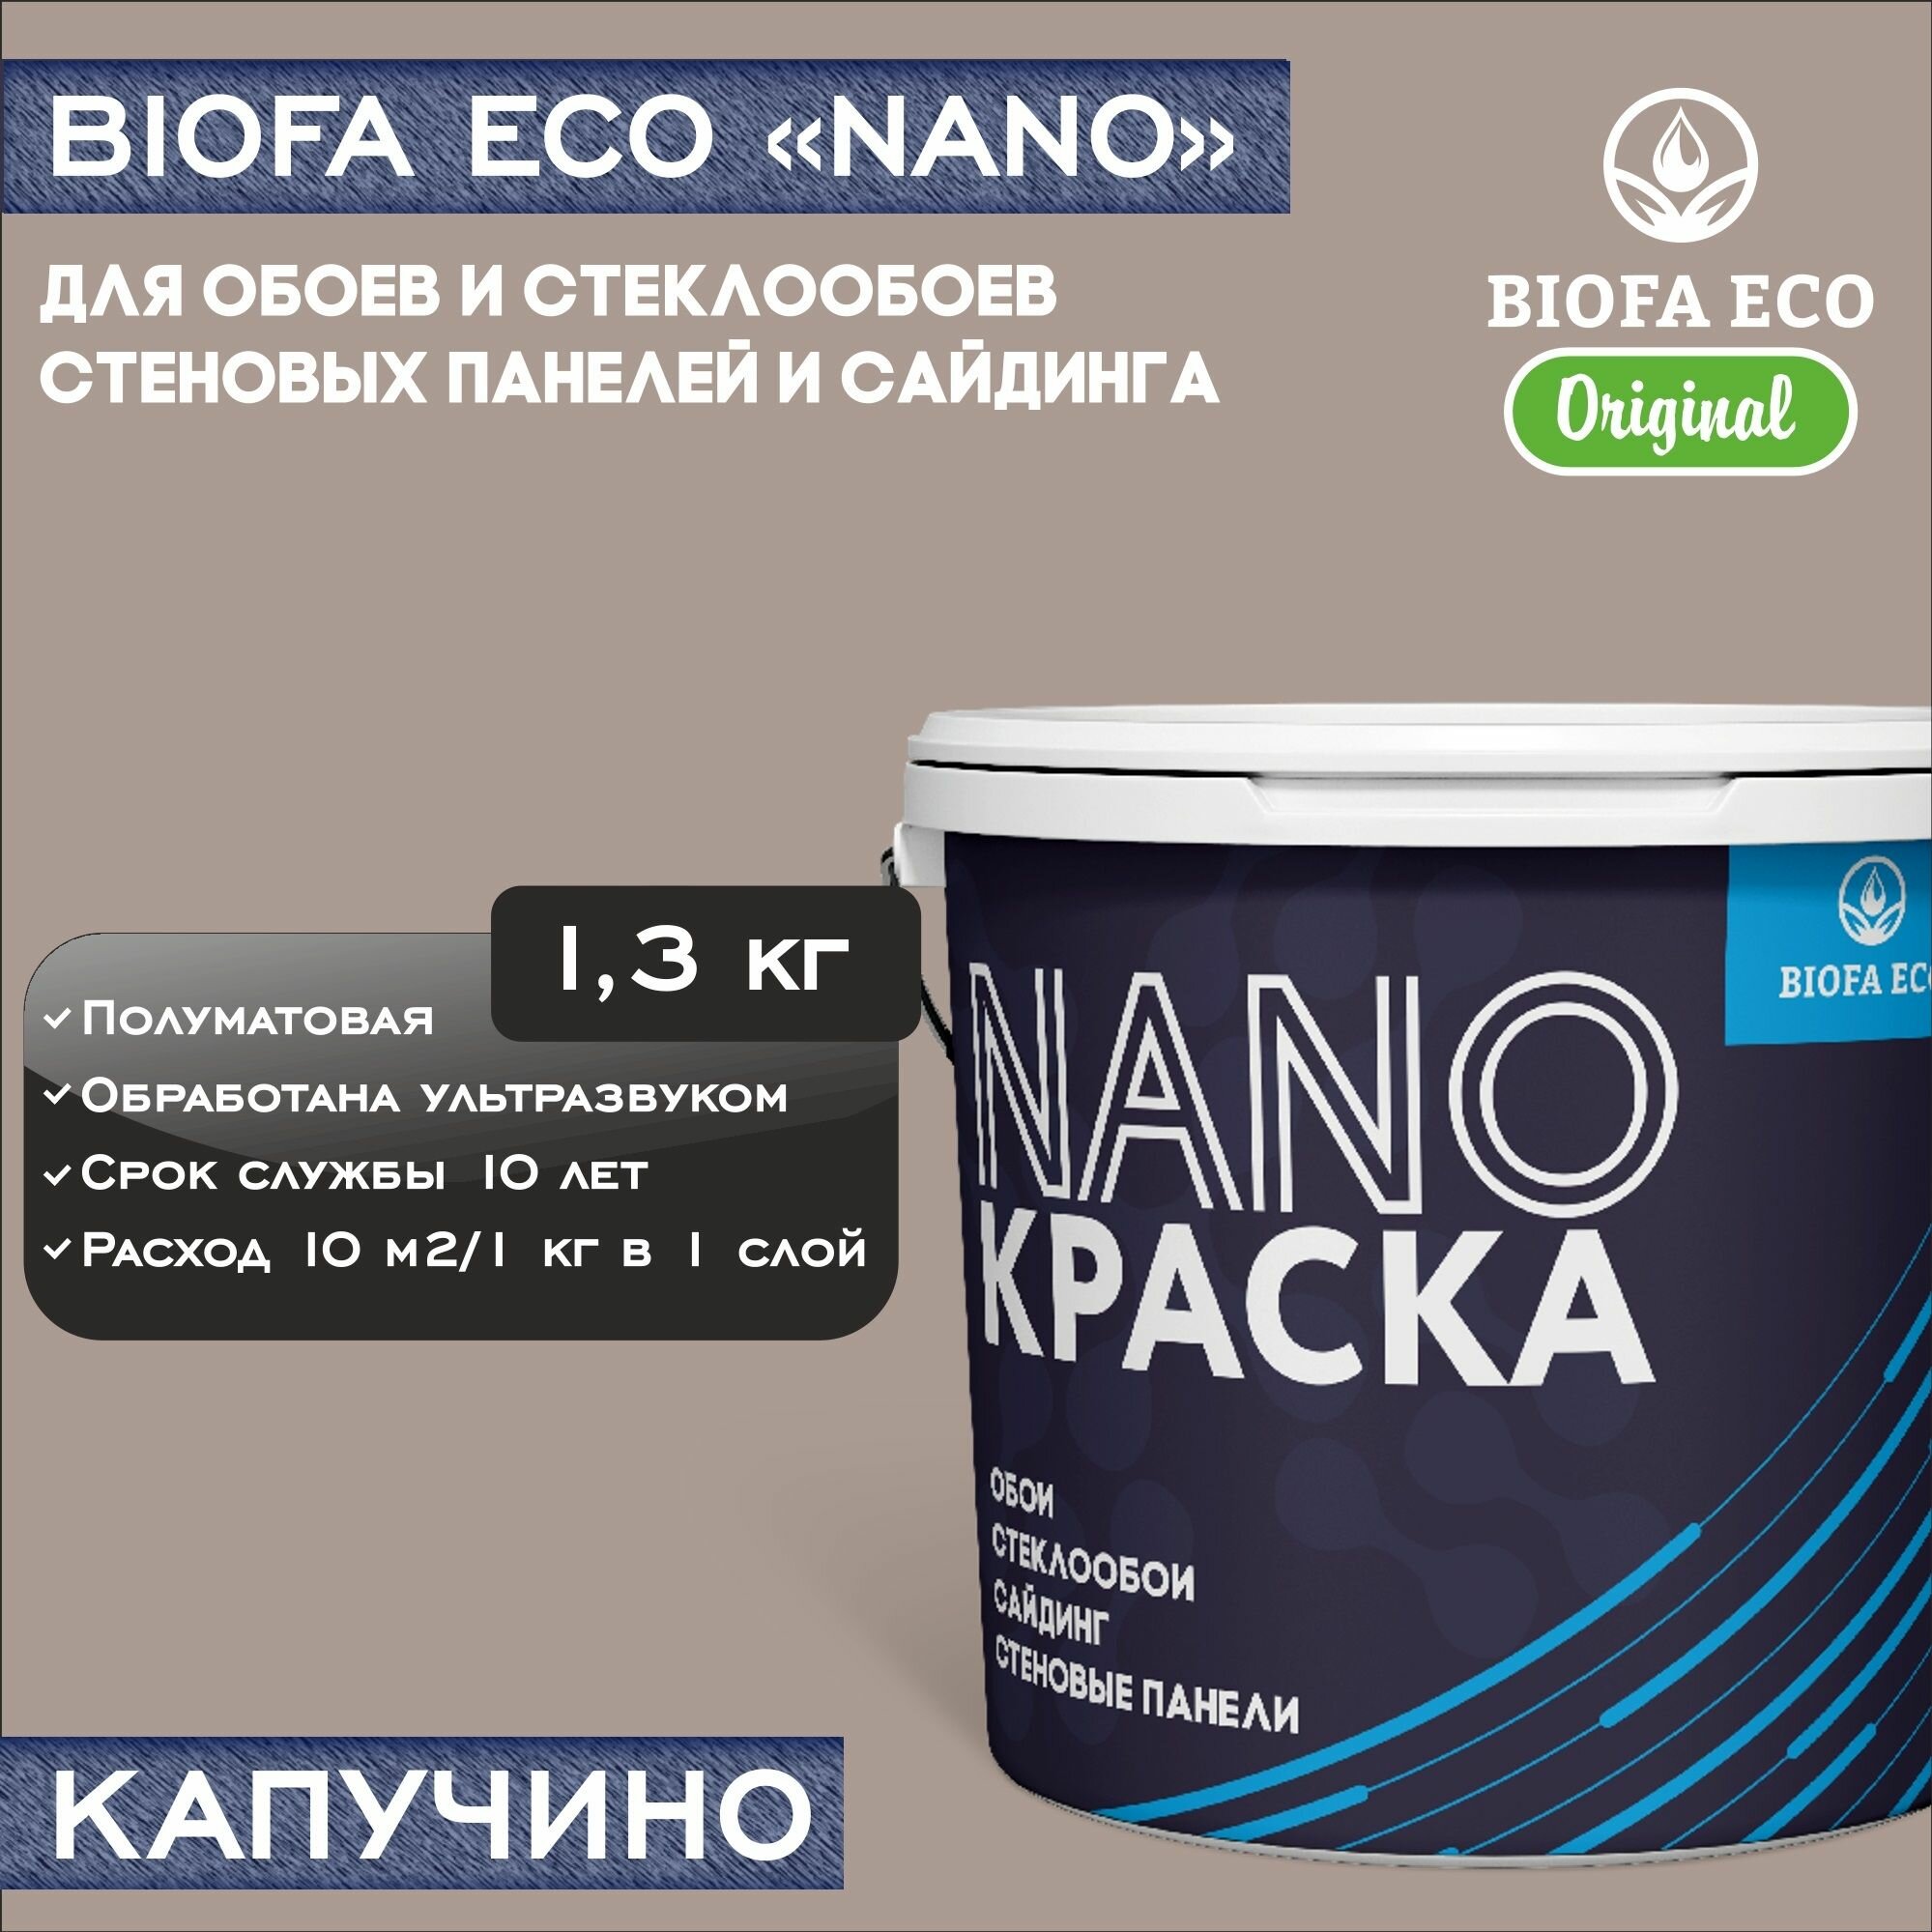 Краска BIOFA ECO NANO для обоев, стеклообоев, стеновых панелей и сайдинга, адгезионная, полуматовая, цвет капучино, 1,3 кг